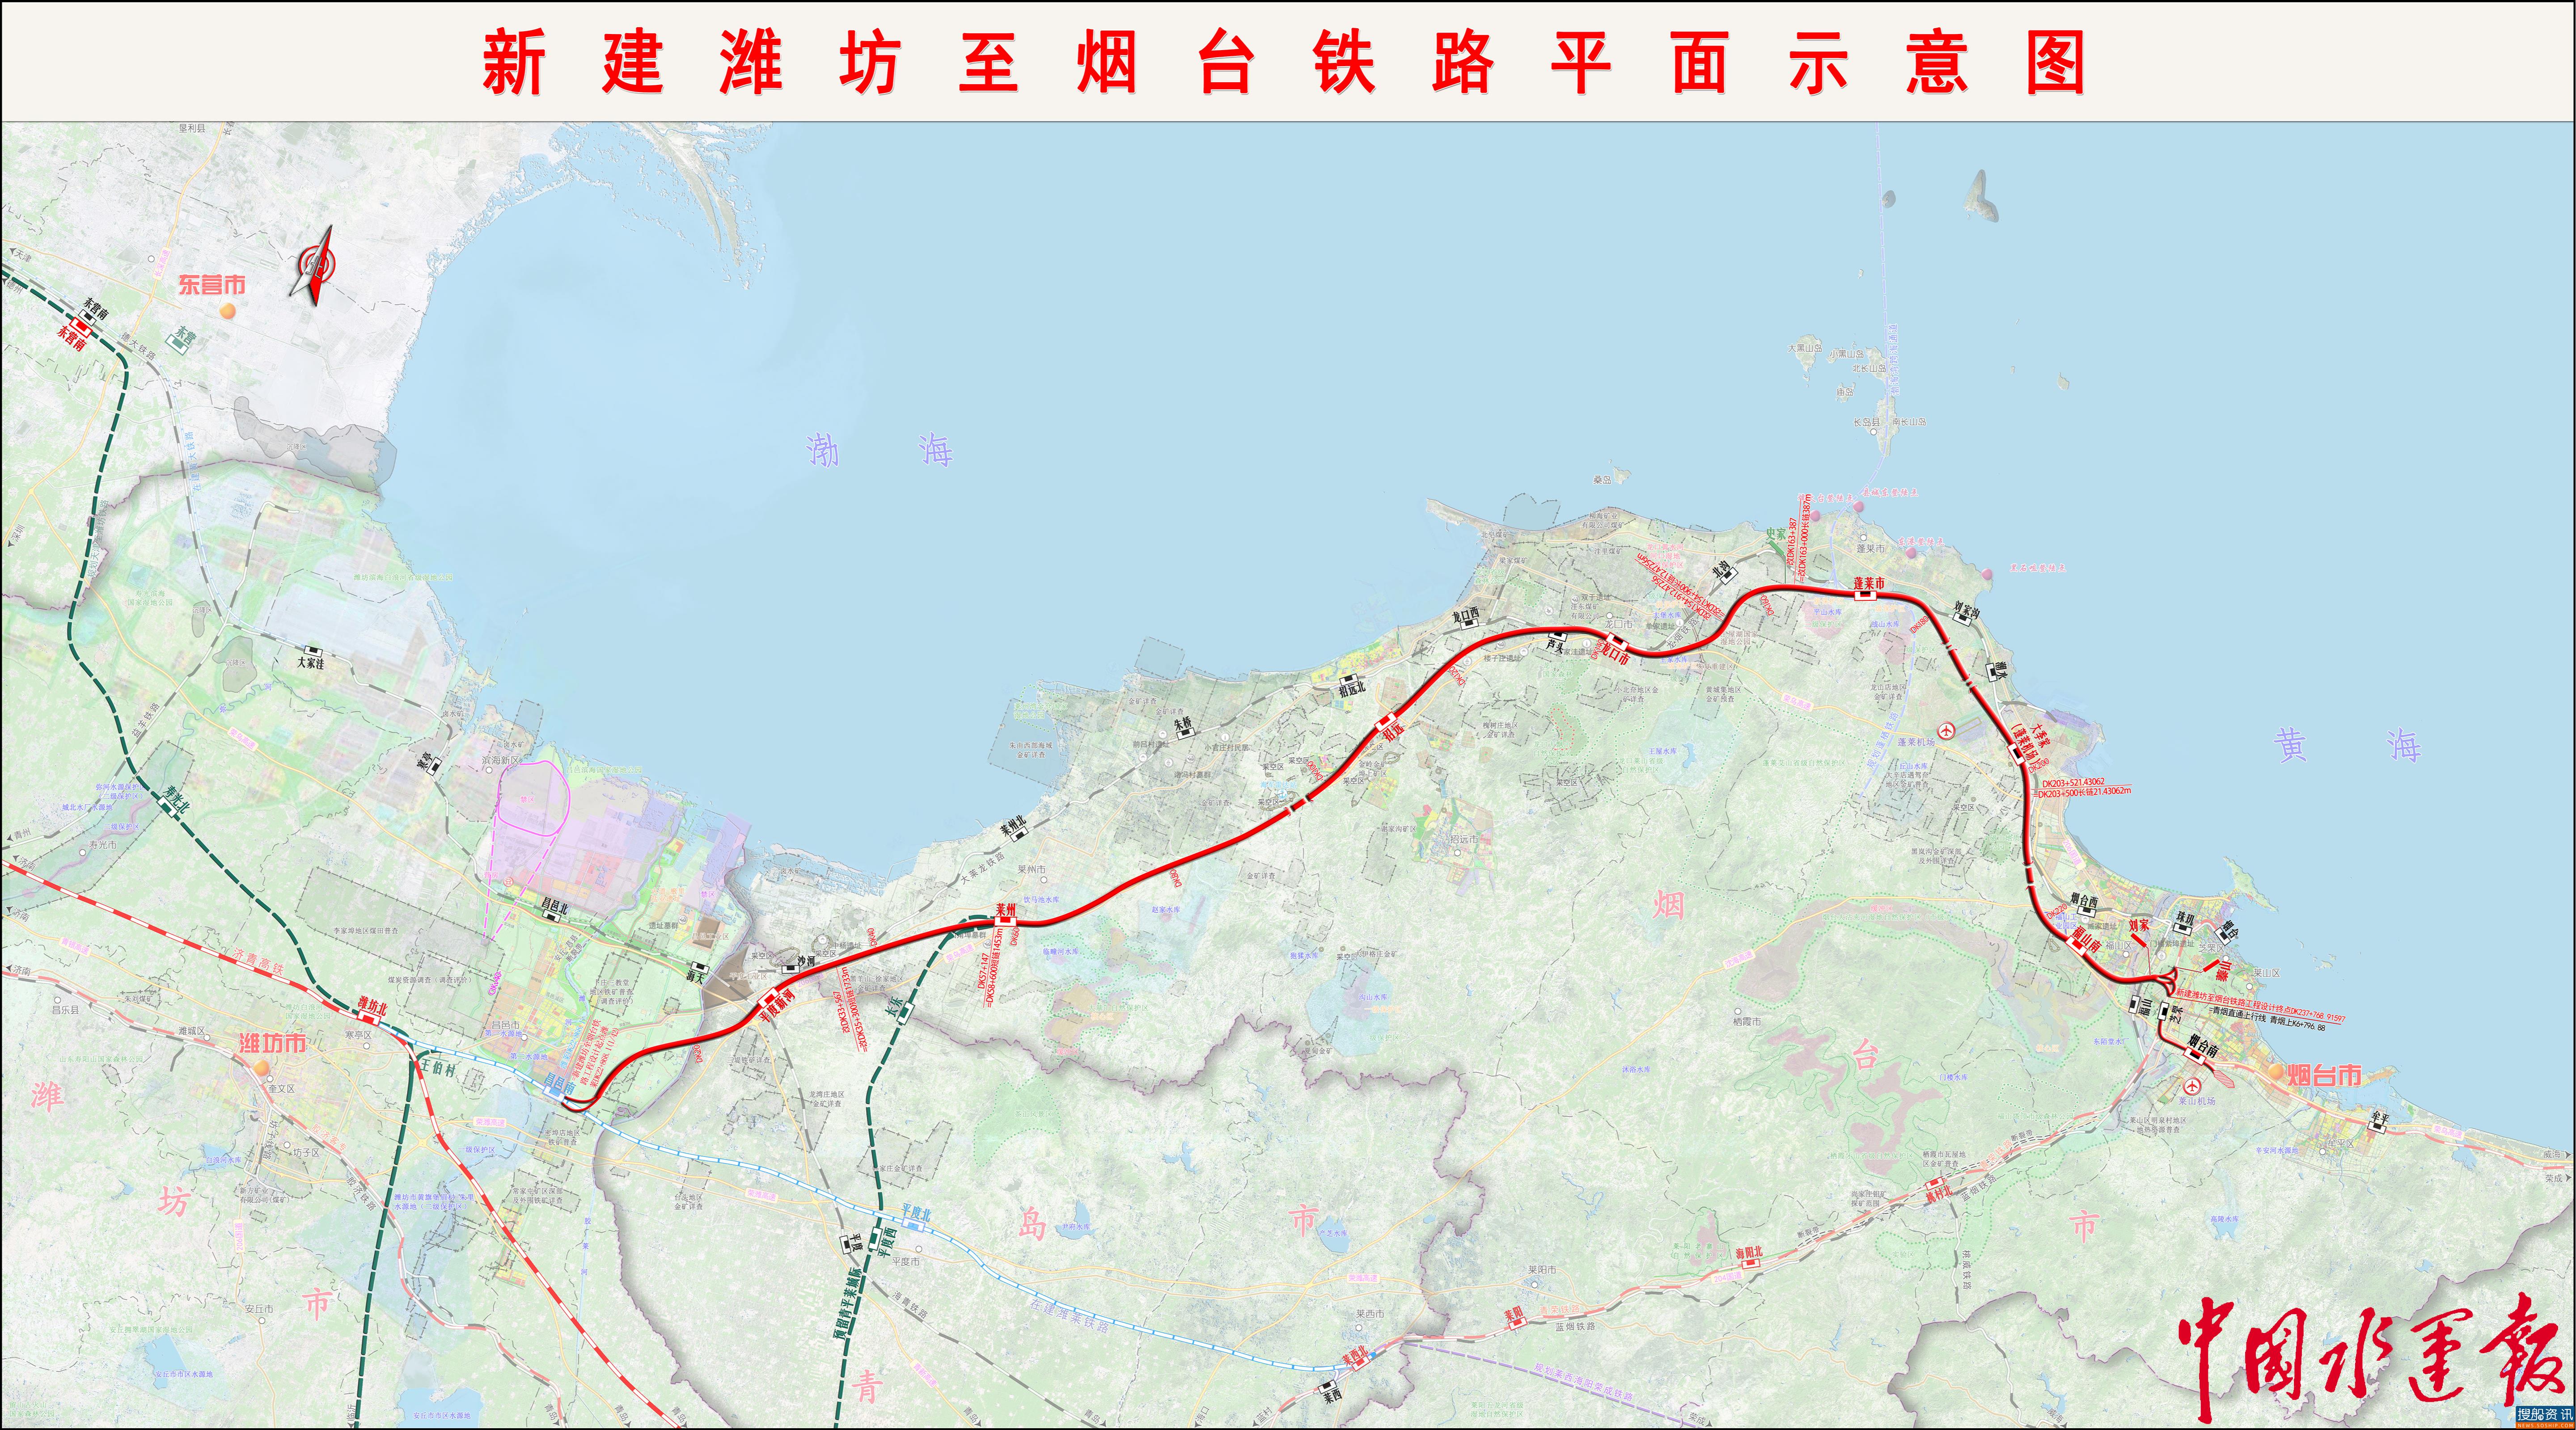 铁路累计完成投资330.5亿元 山东省政府对潍烟、莱荣高铁项目建设进行动员部署